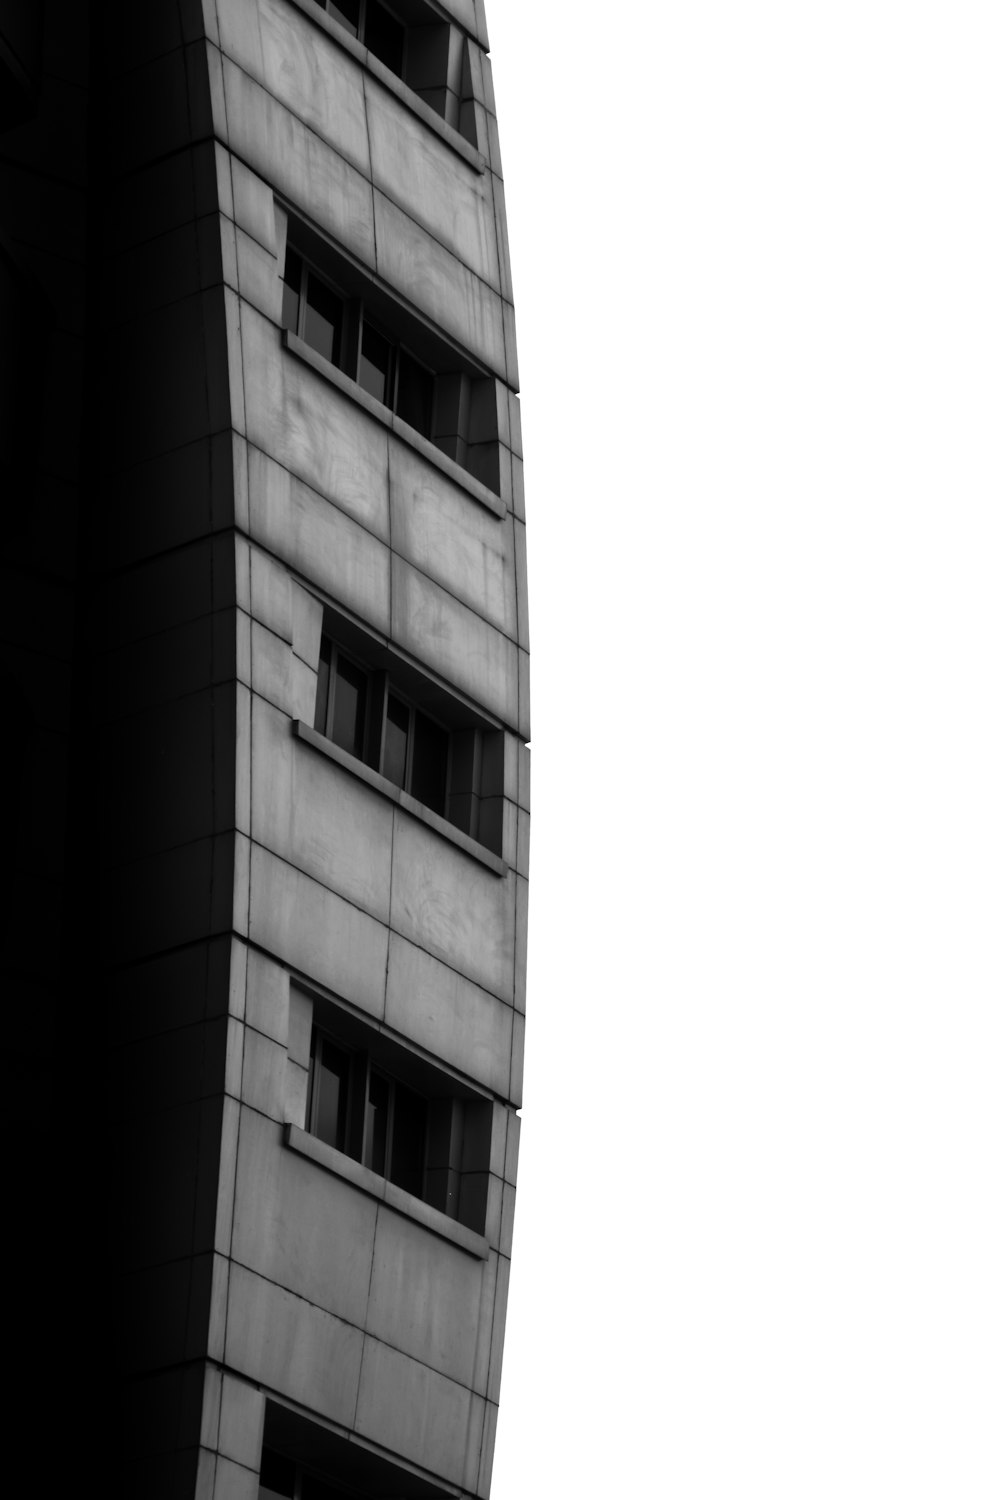 콘크리트 건물의 그레이스케일 사진